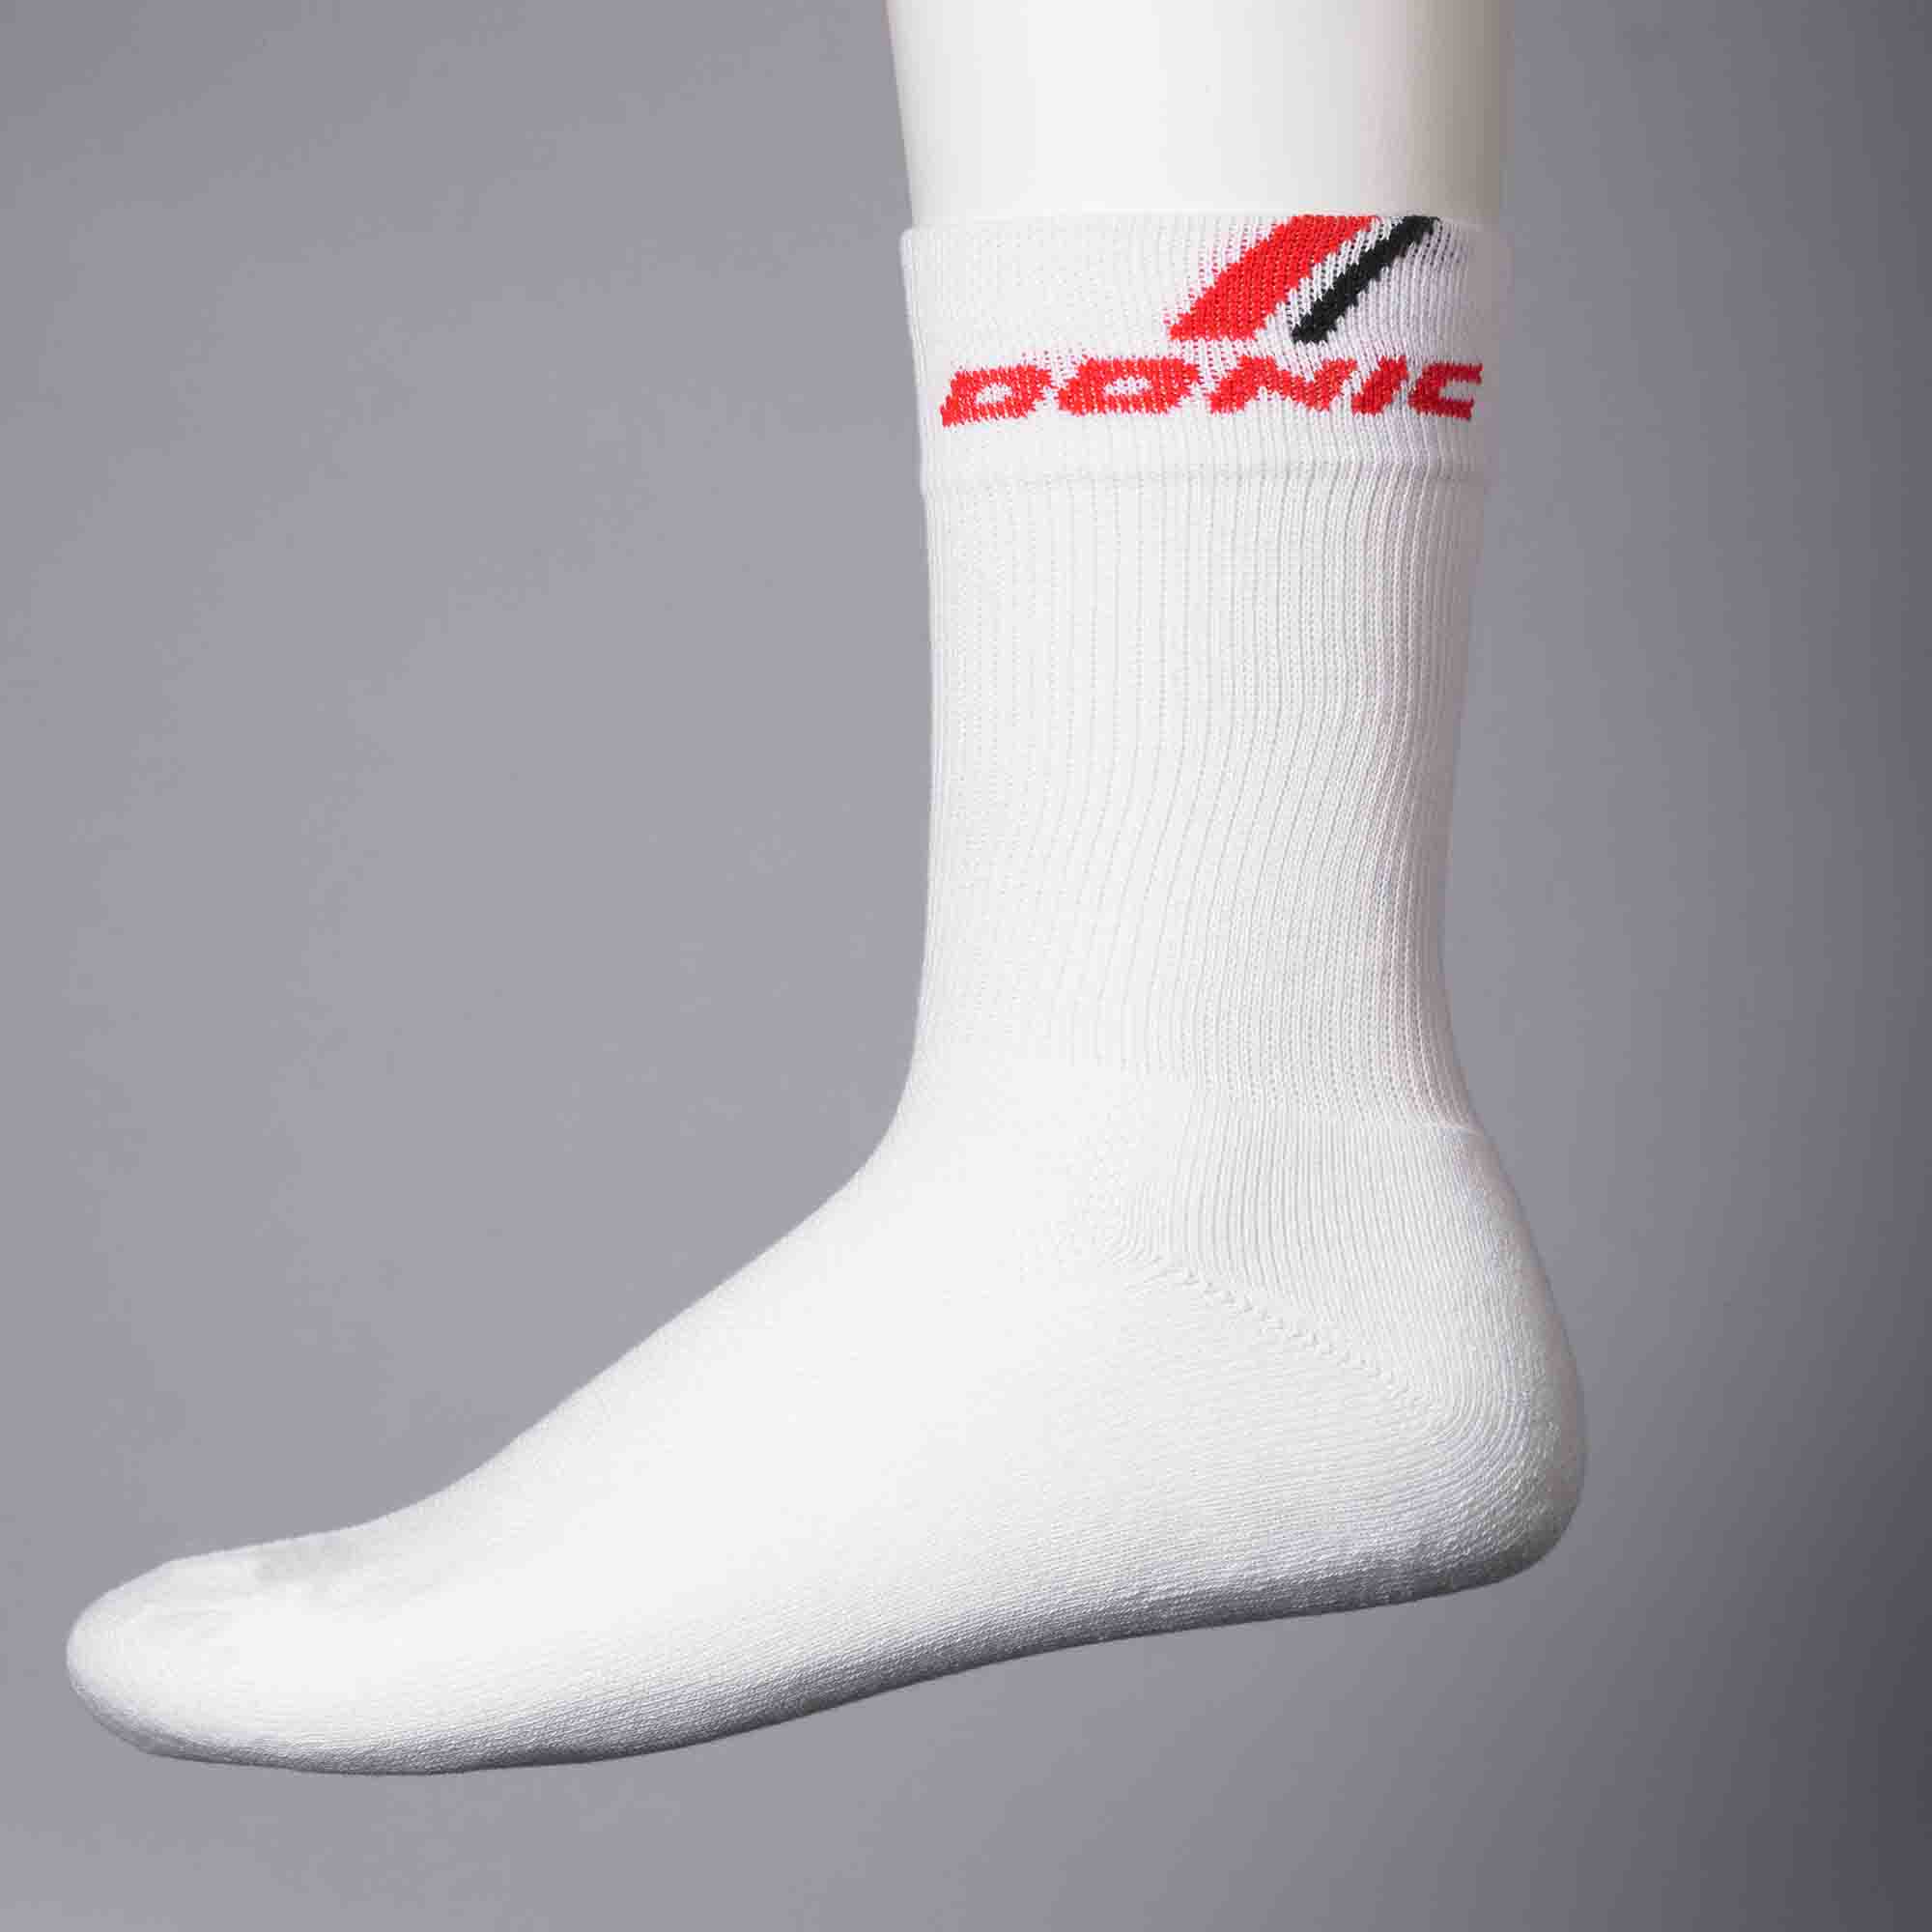 Donic Socke Vesuvio weiß/rot senior